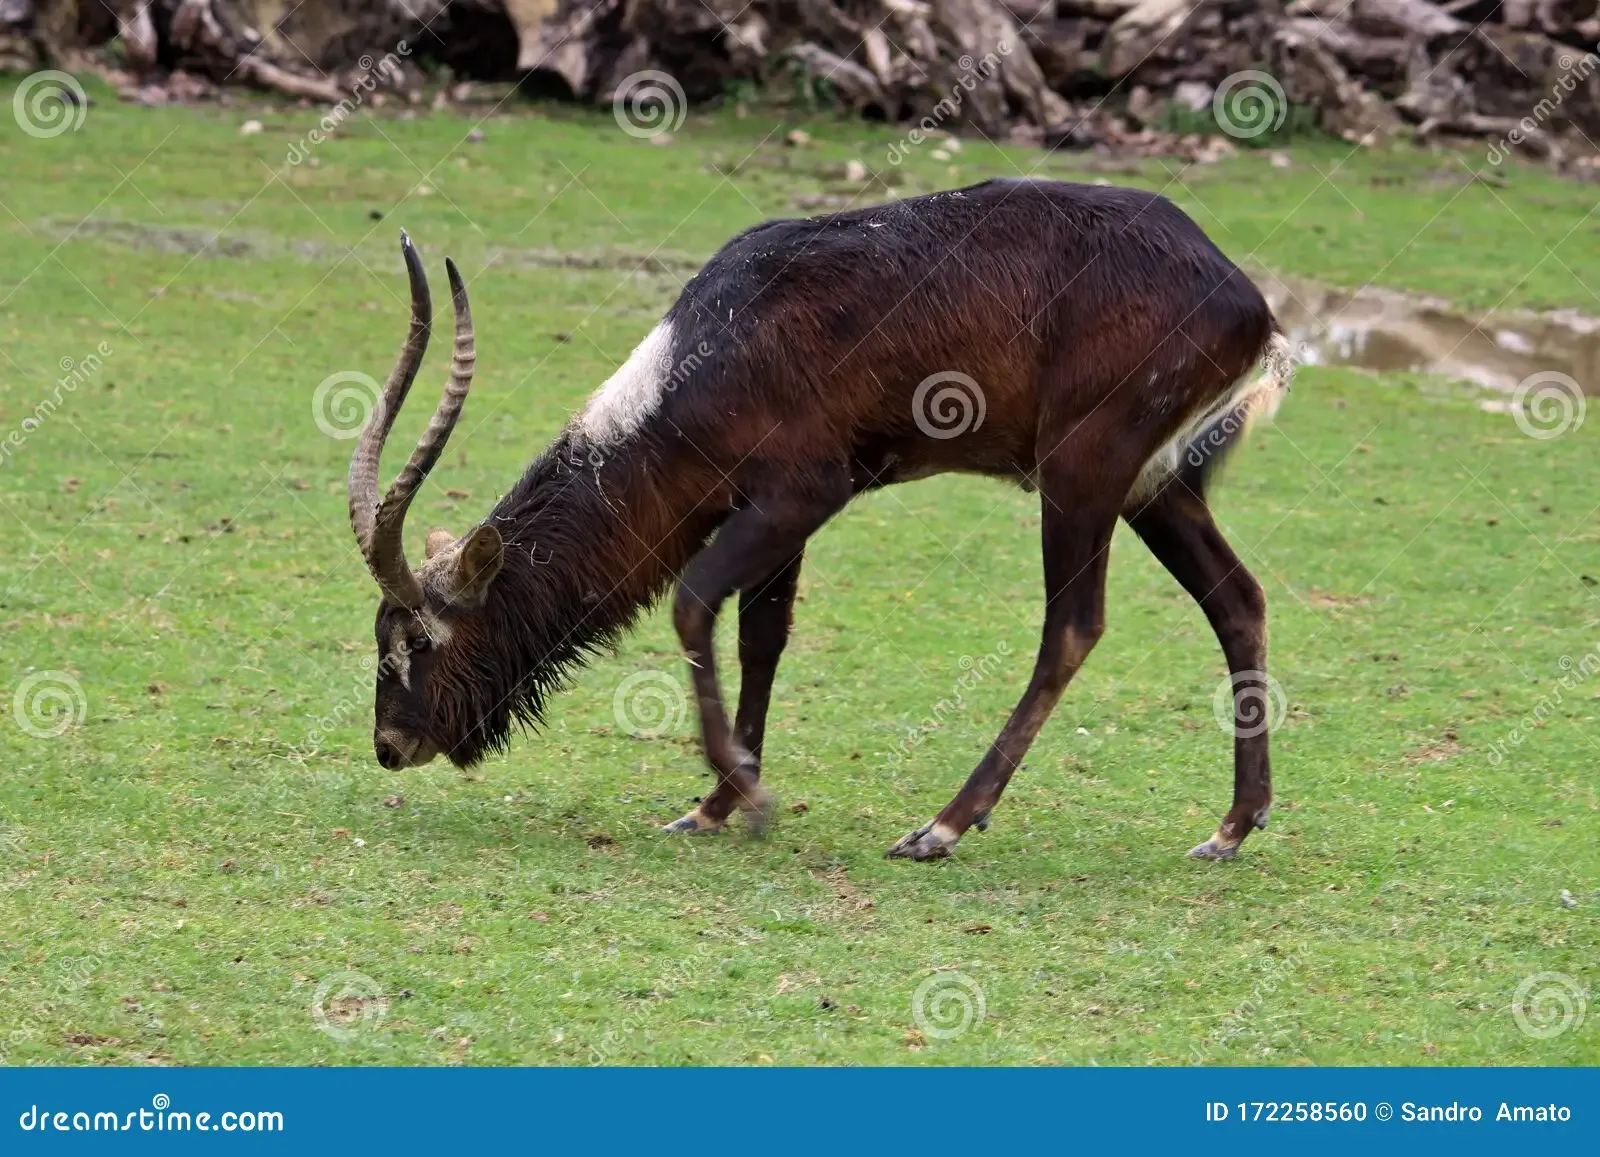 nile-lichi-kobus-megaceros-antelope-lives-flood-areas-southern-sudan-nile-lechwe-kobus-megaceros-male-172258560.jpg